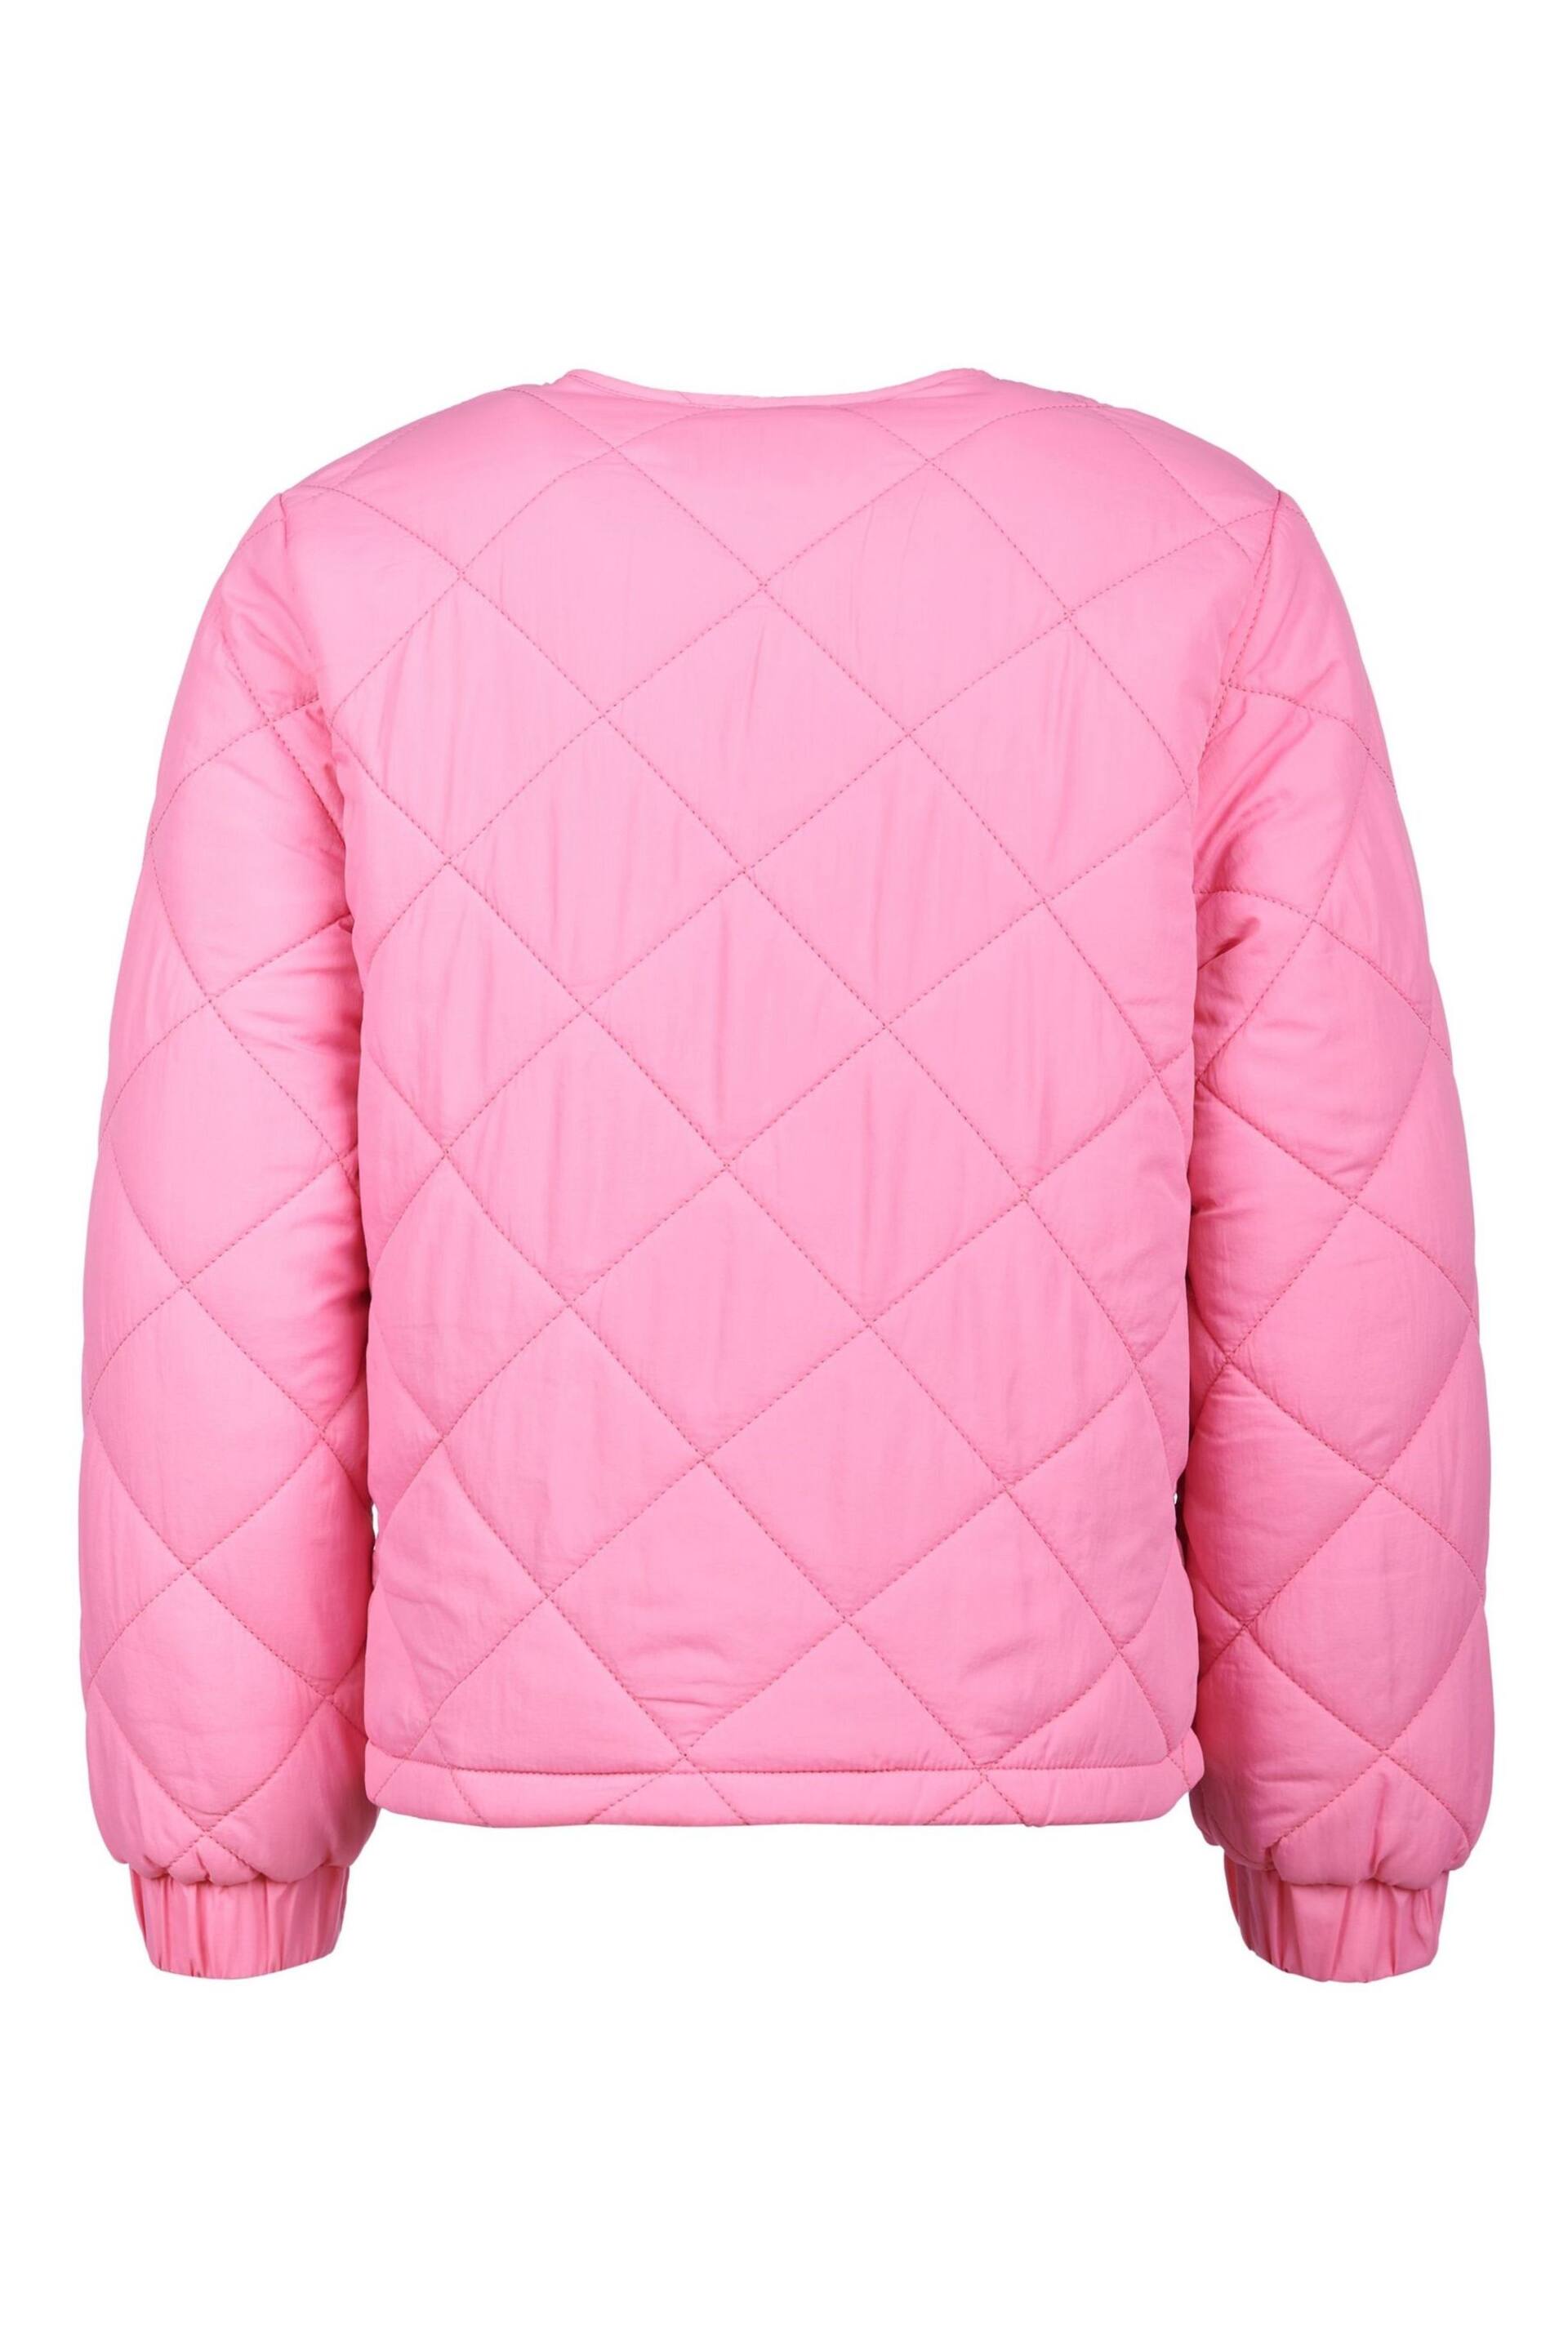 U.S. Polo Assn. Girls Pink Lightweight Puffer Jacket - Image 2 of 5